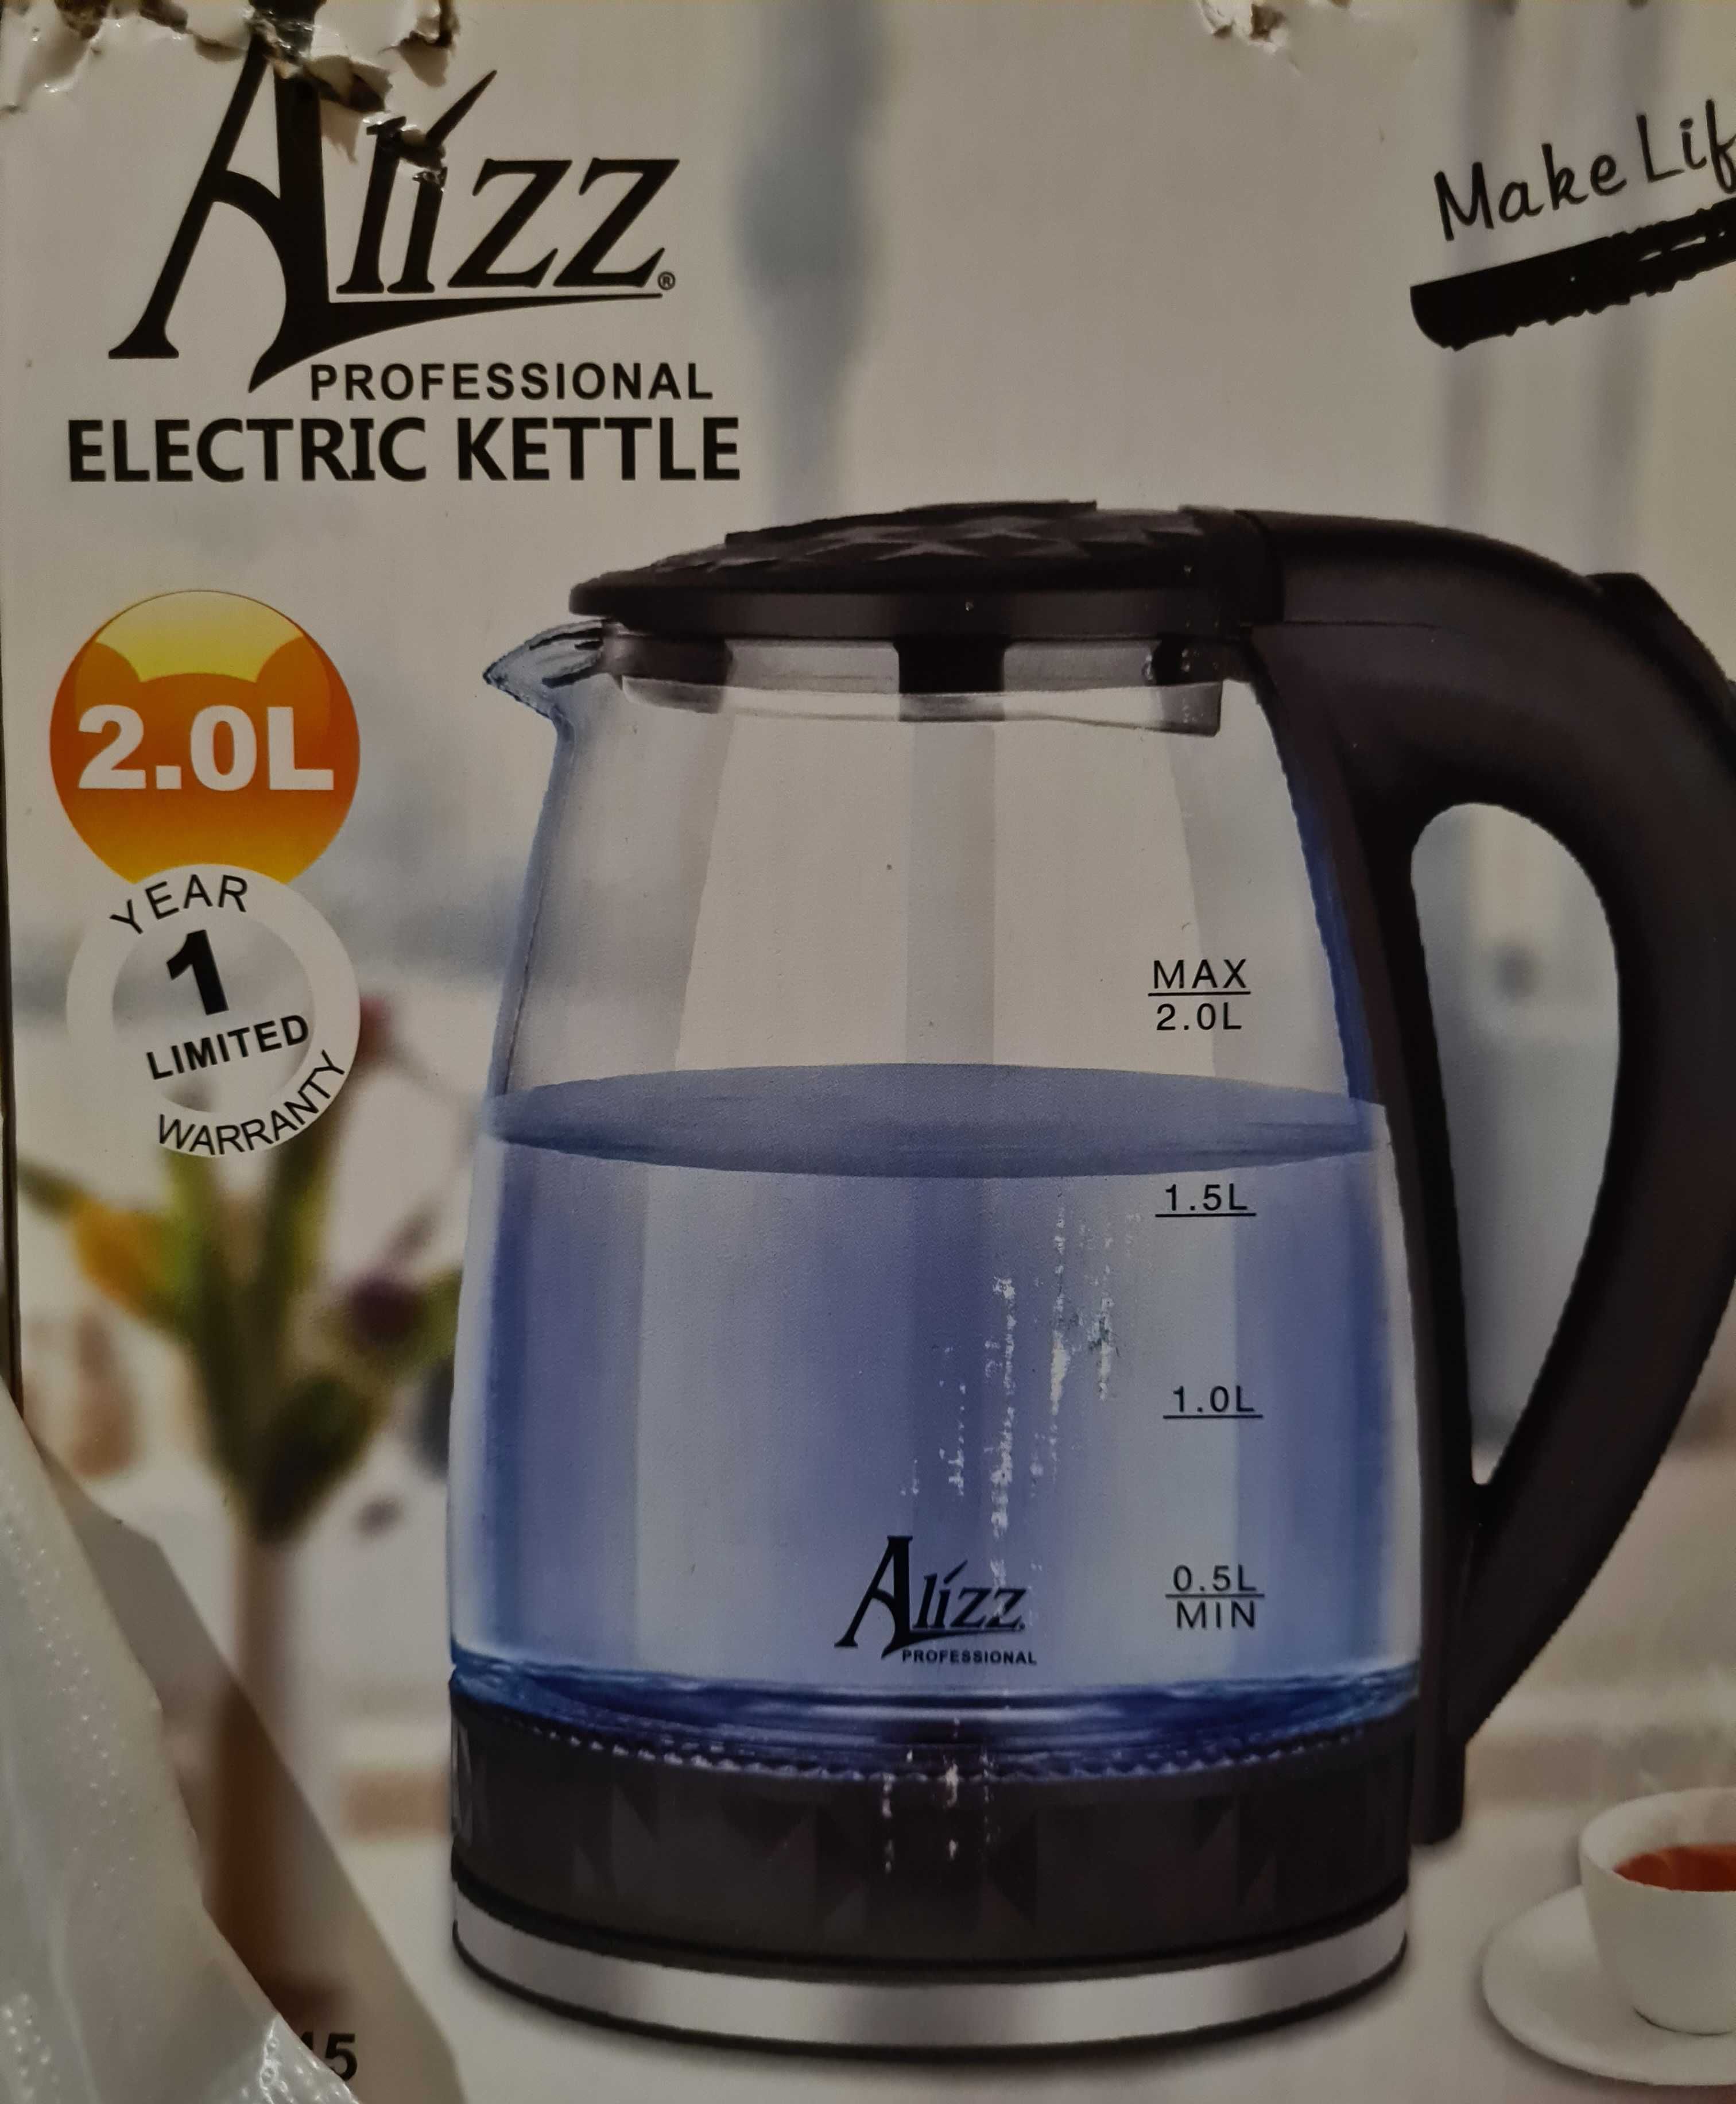 Продам новый чайник Alizz electrical kettle 2L.
Только Алматы